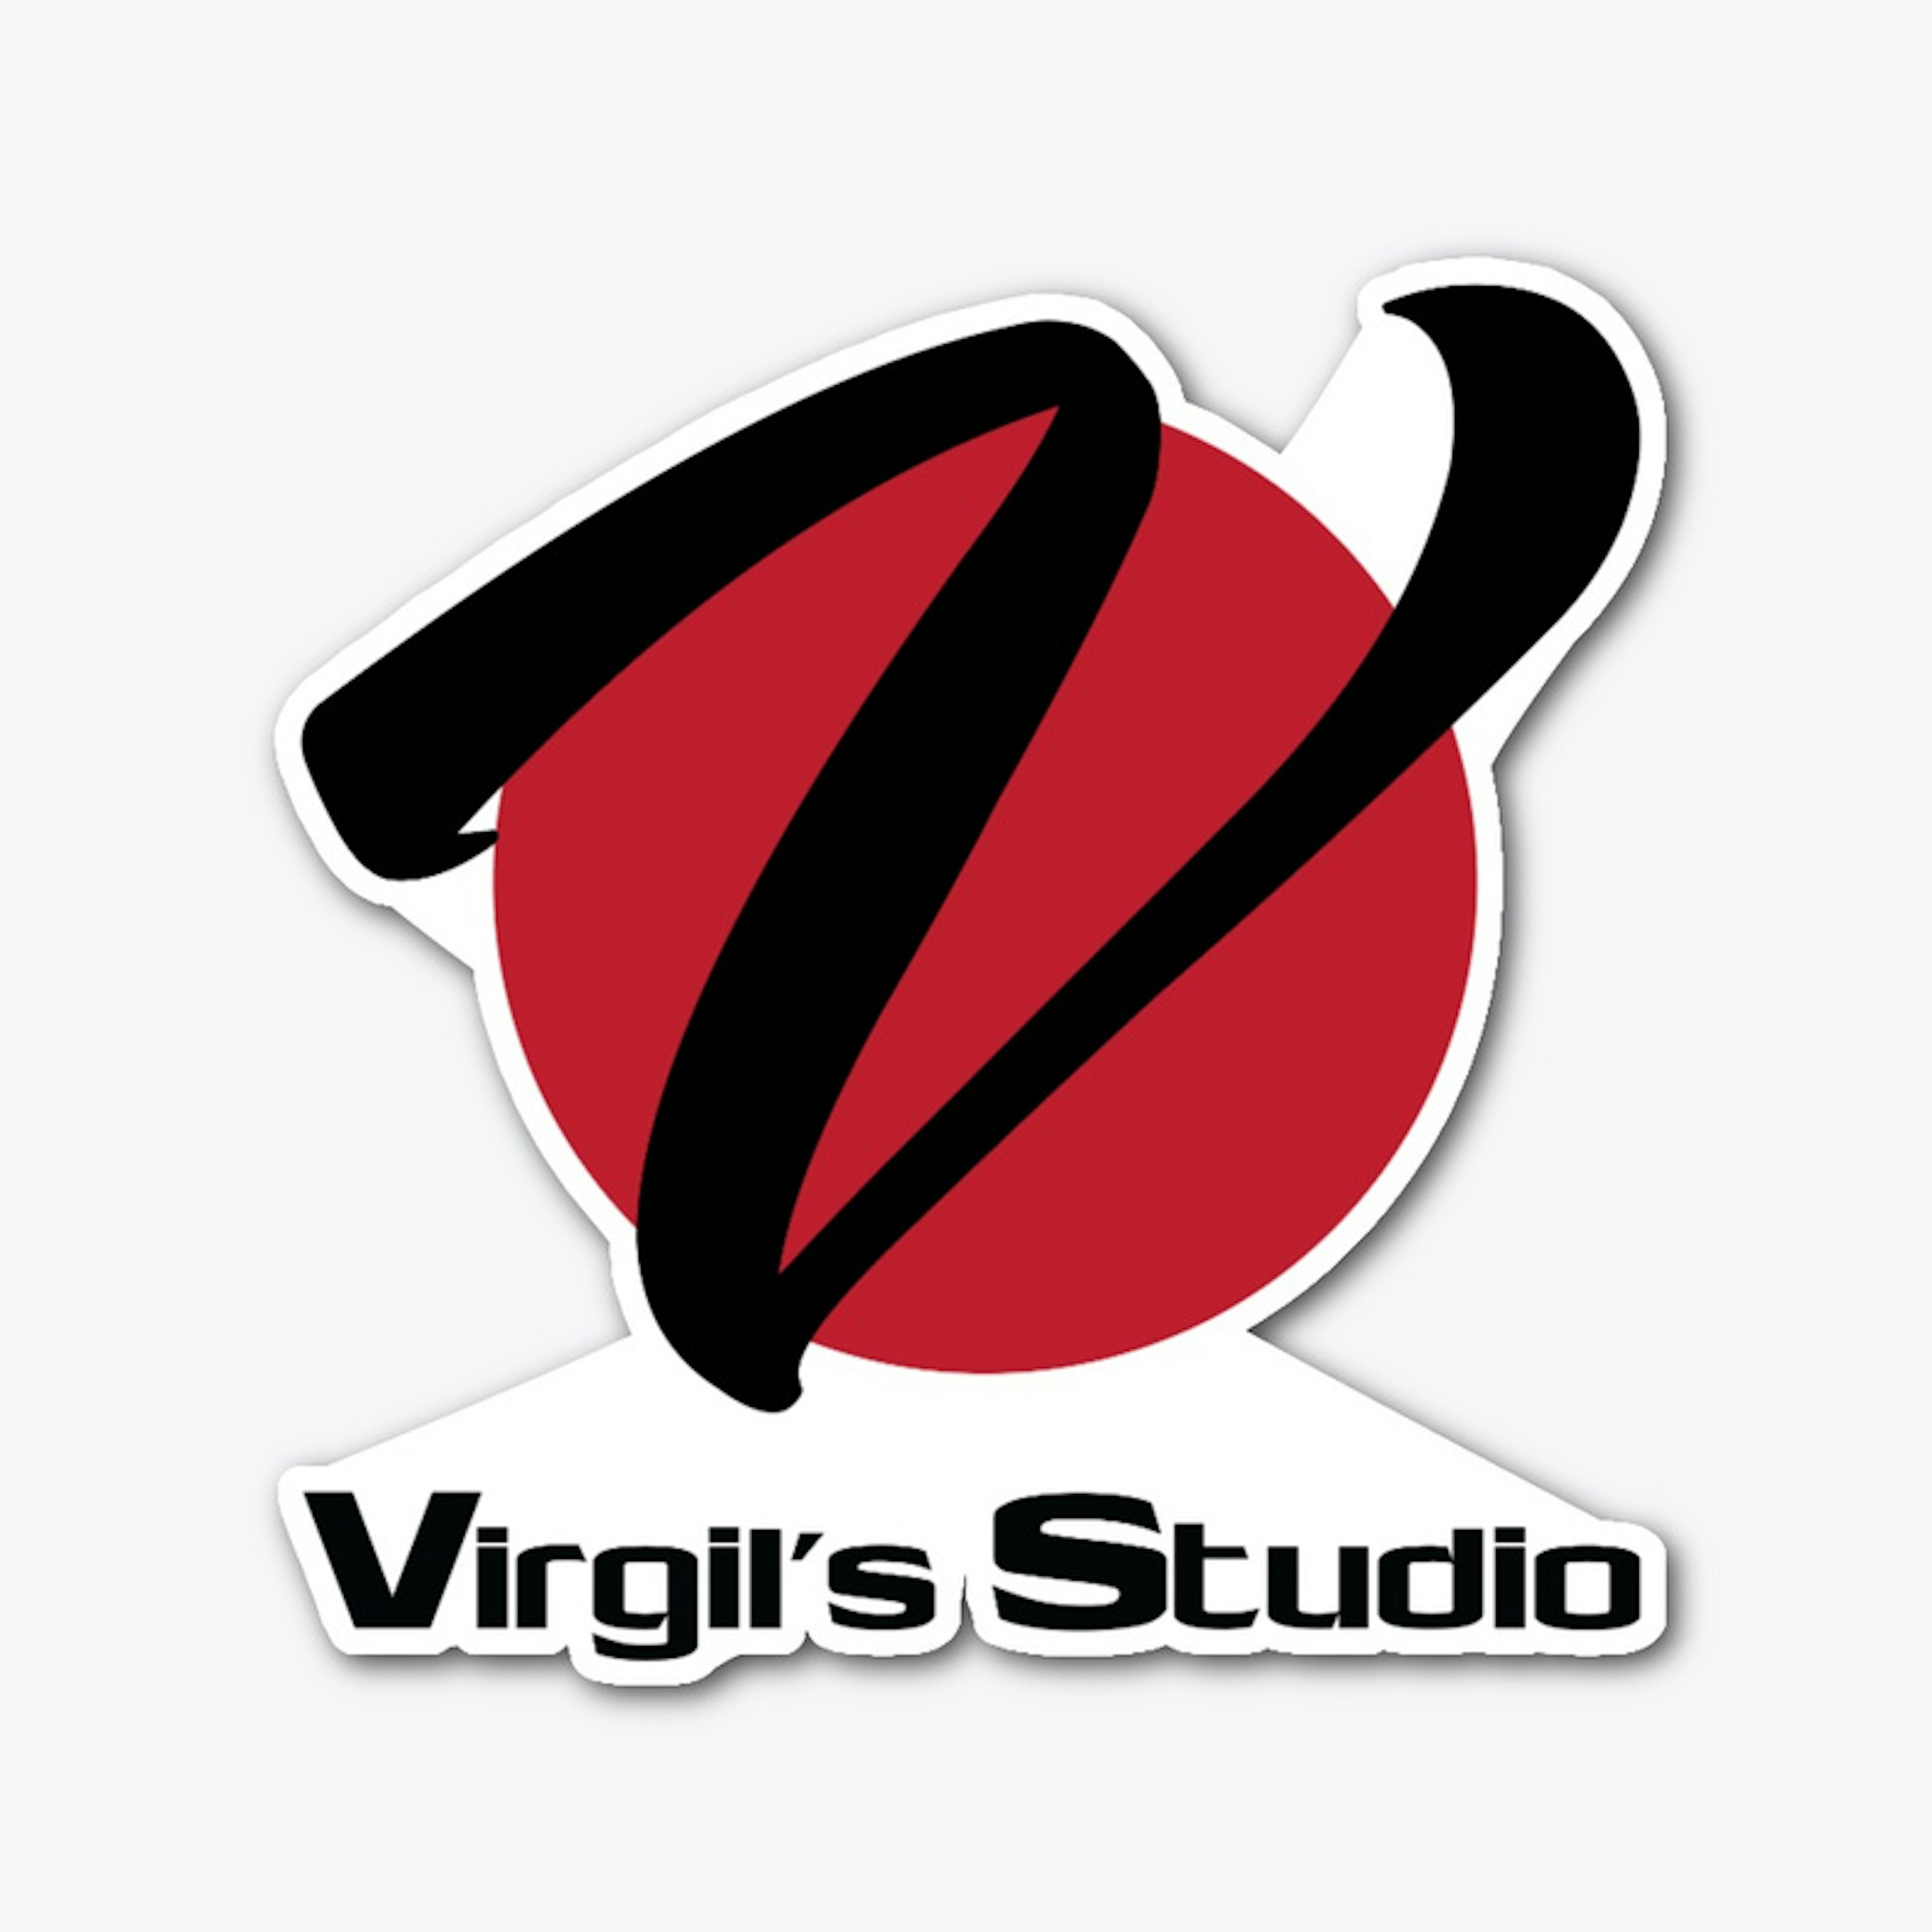 Virgil's Studio Gear